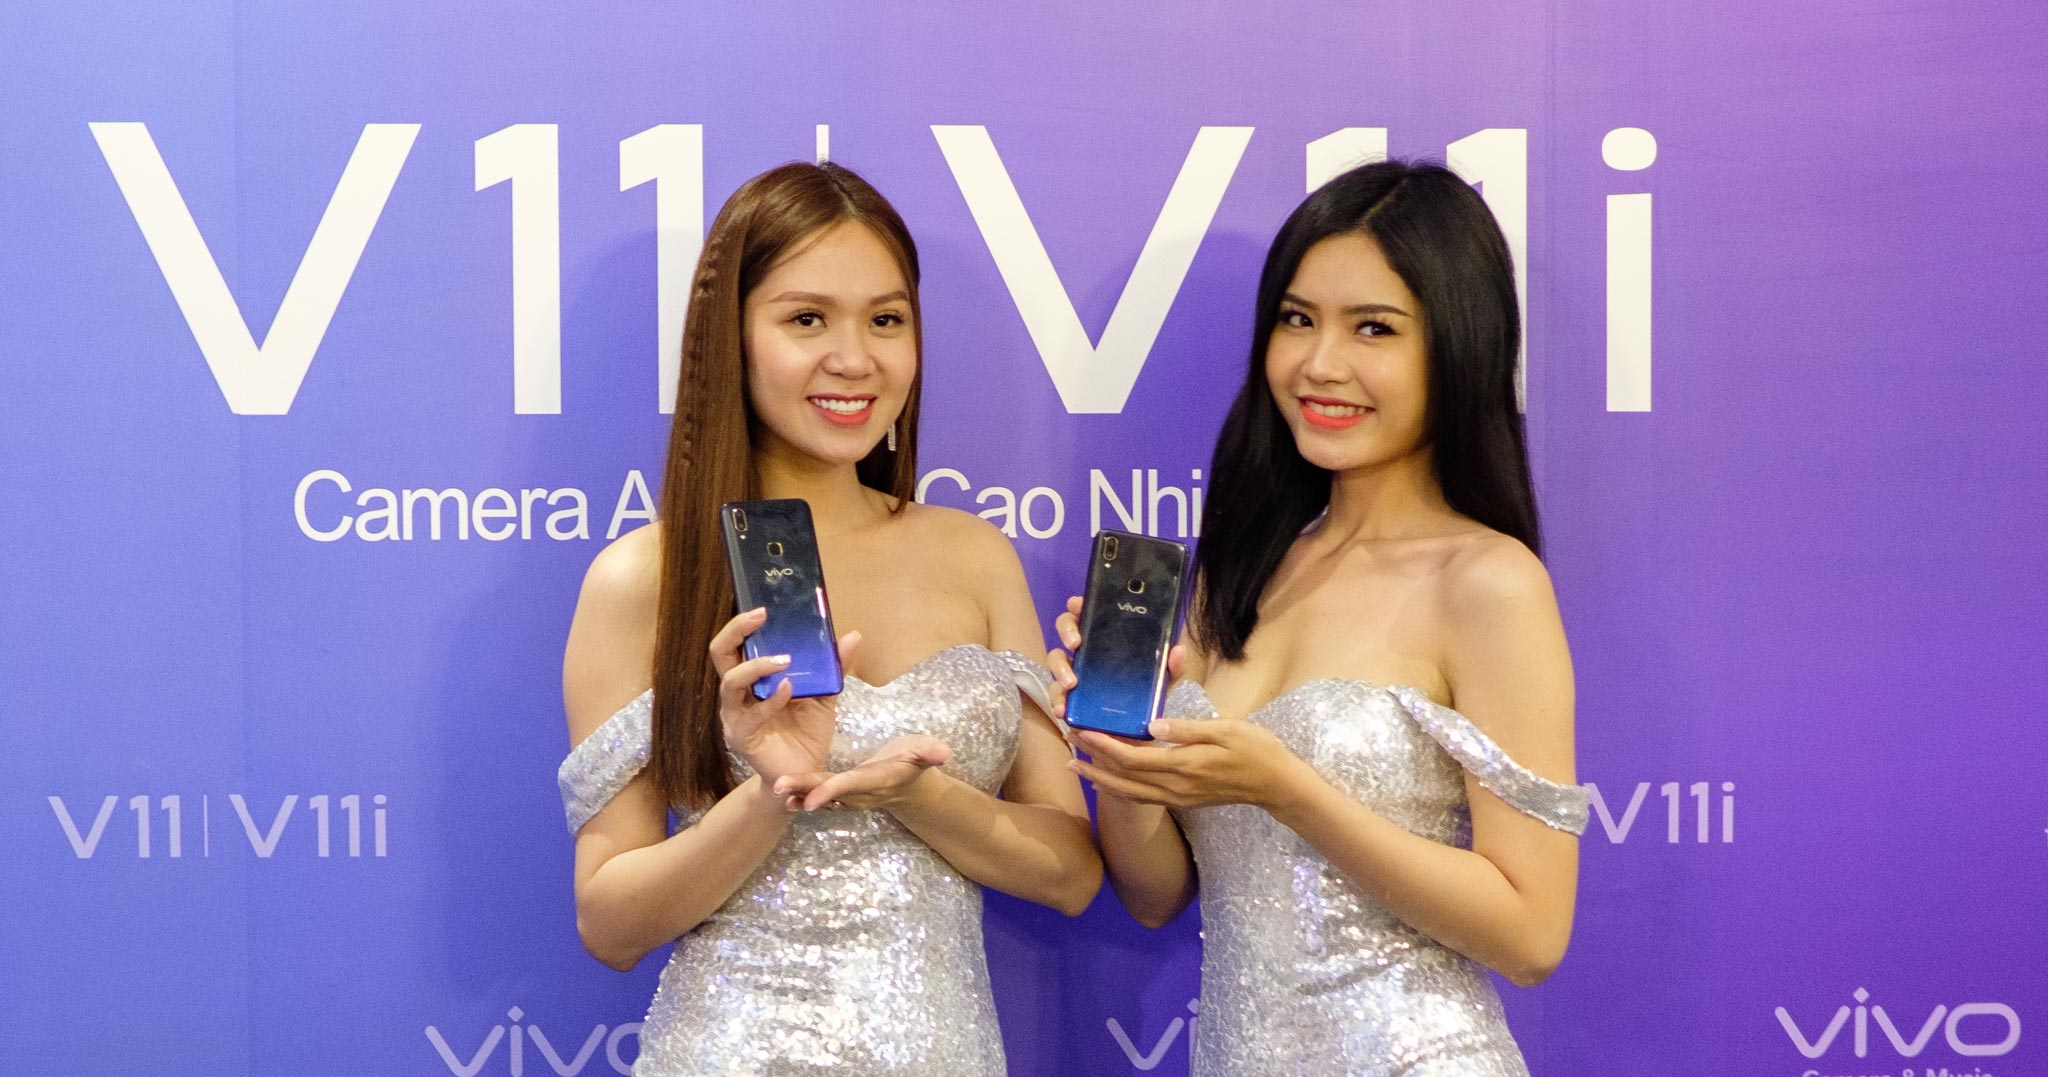 Vivo ra mắt V11 tại Việt Nam, màn hình 6.41", vân tay dưới màn hình, giá 11,9 triệu đồng